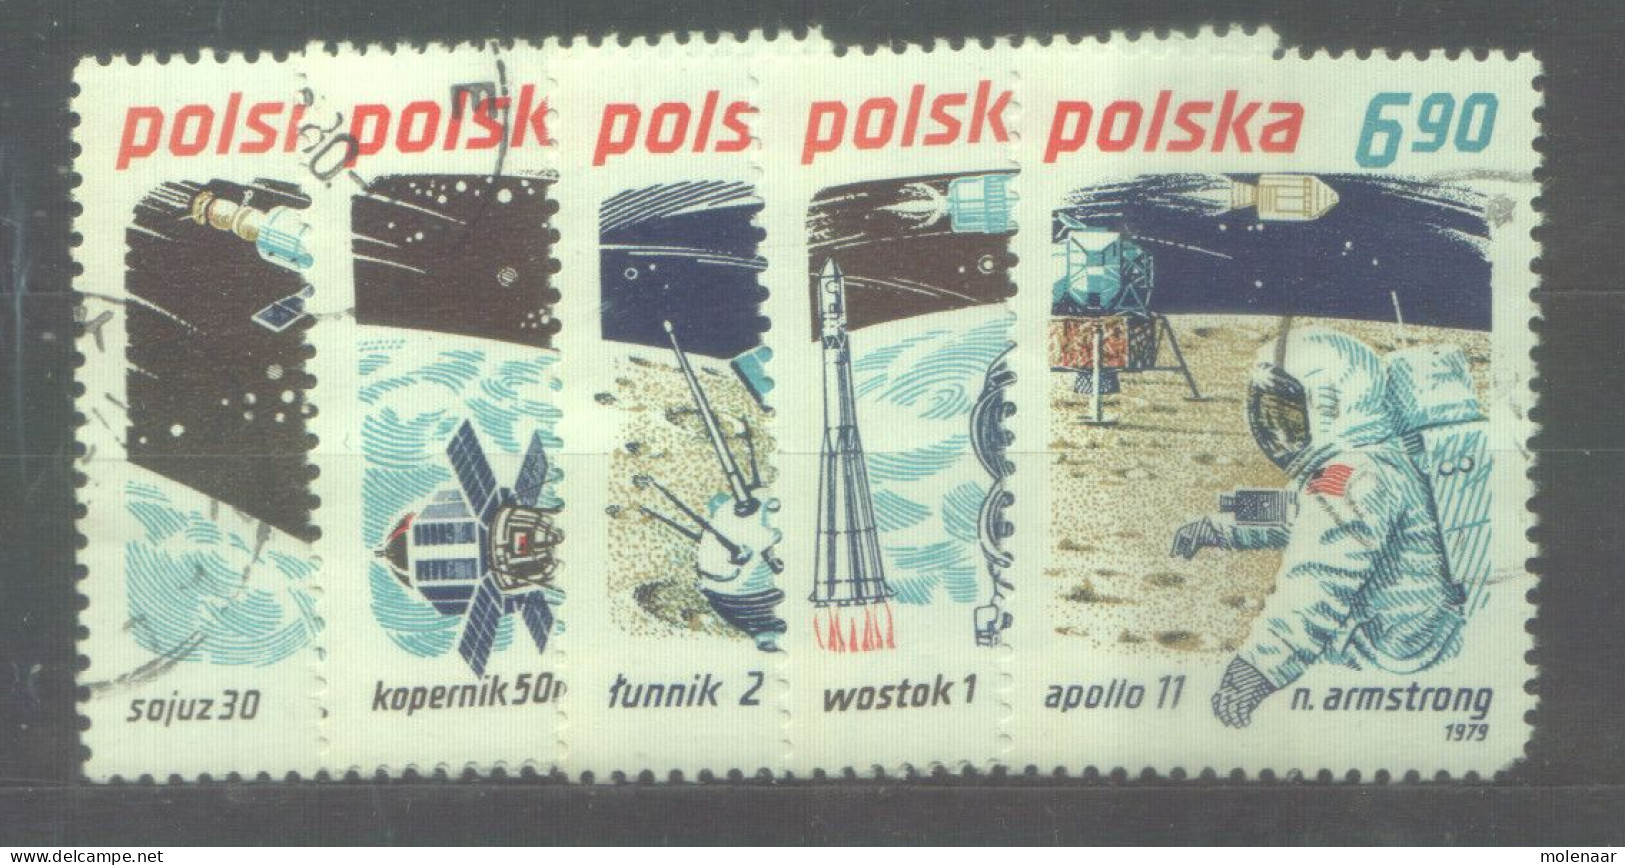 Postzegels > Europa > Polen > 1944-.... Republiek > 1971-80 > Gebruikt  2660-2664 (12178) - Gebraucht